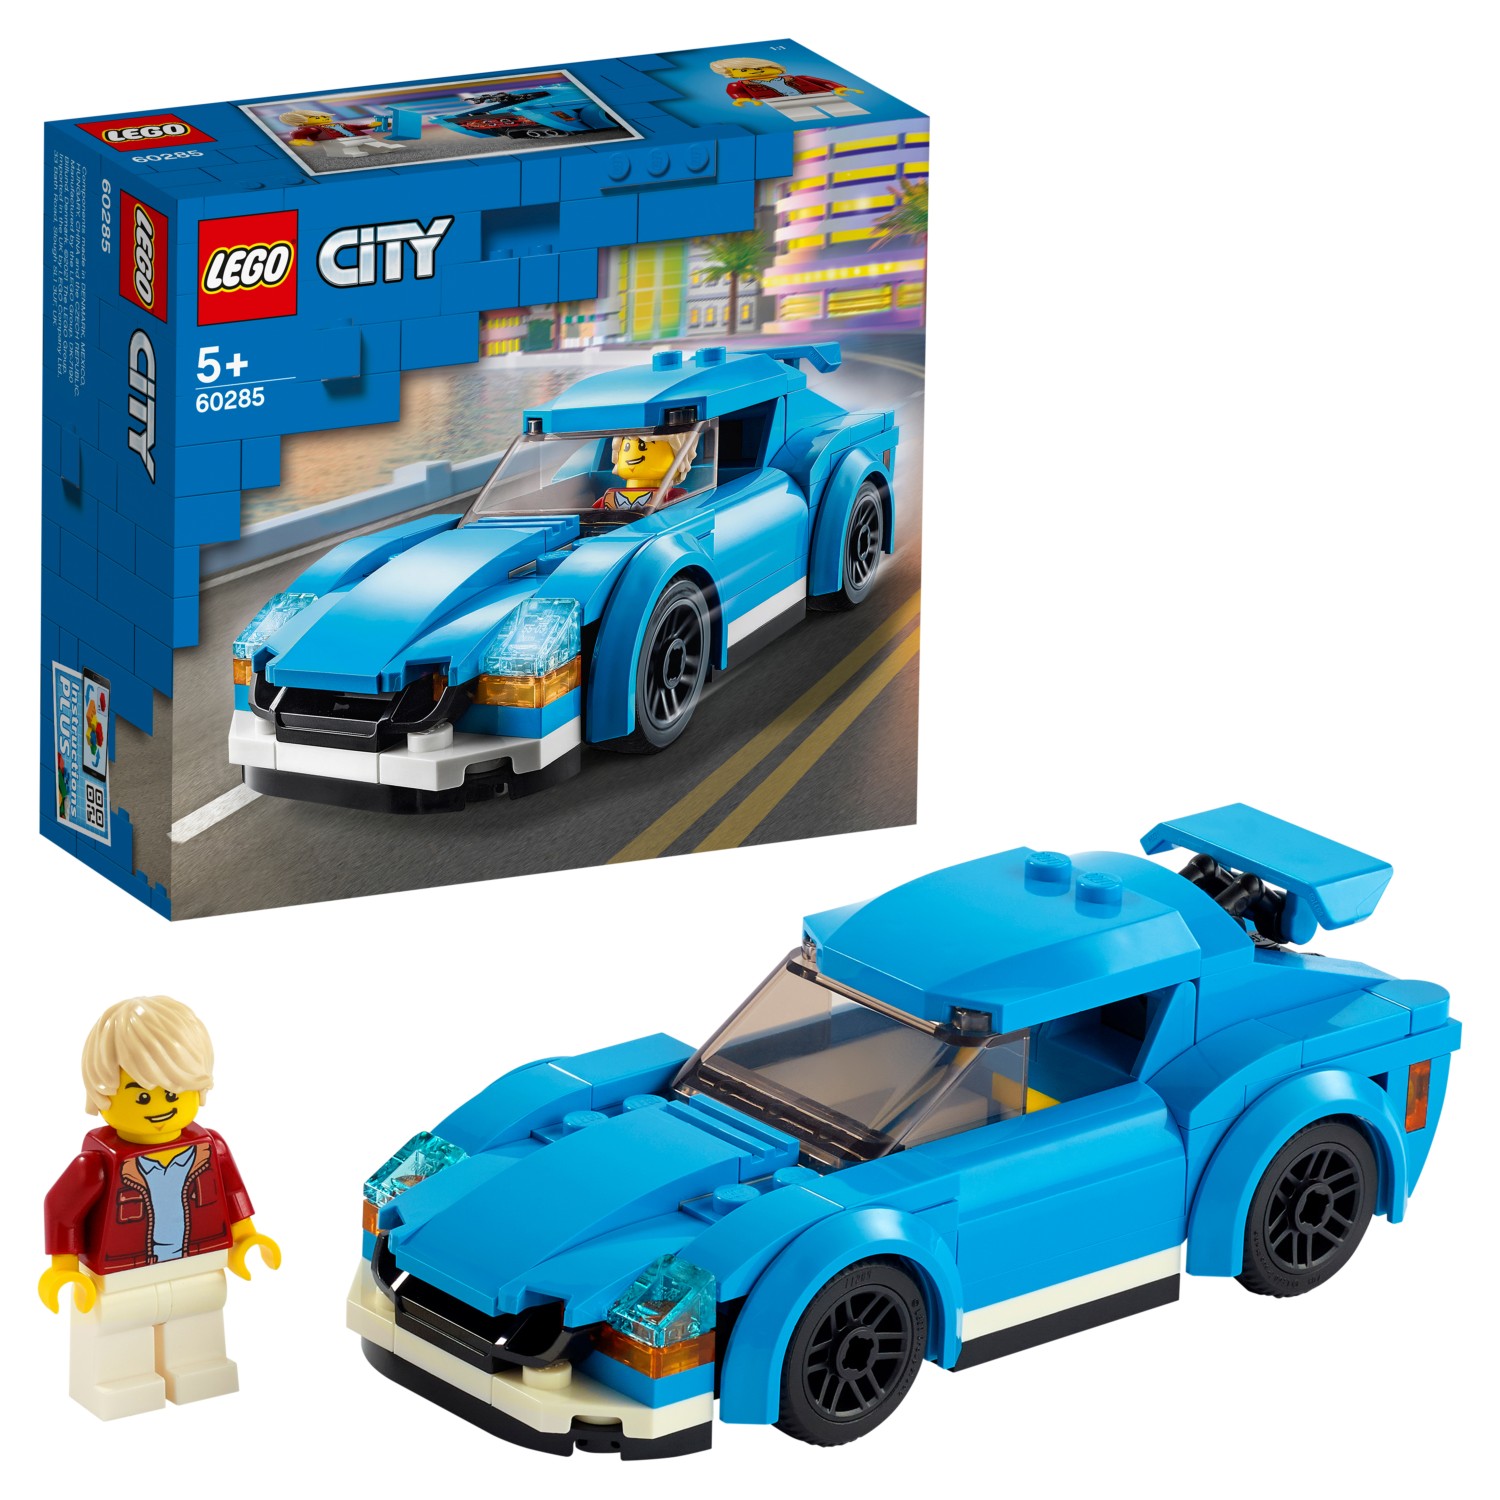 Конструктор LEGO City Great Vehicles 60285 Спортивный автомобиль конструктор lego creator 31100 спортивный автомобиль